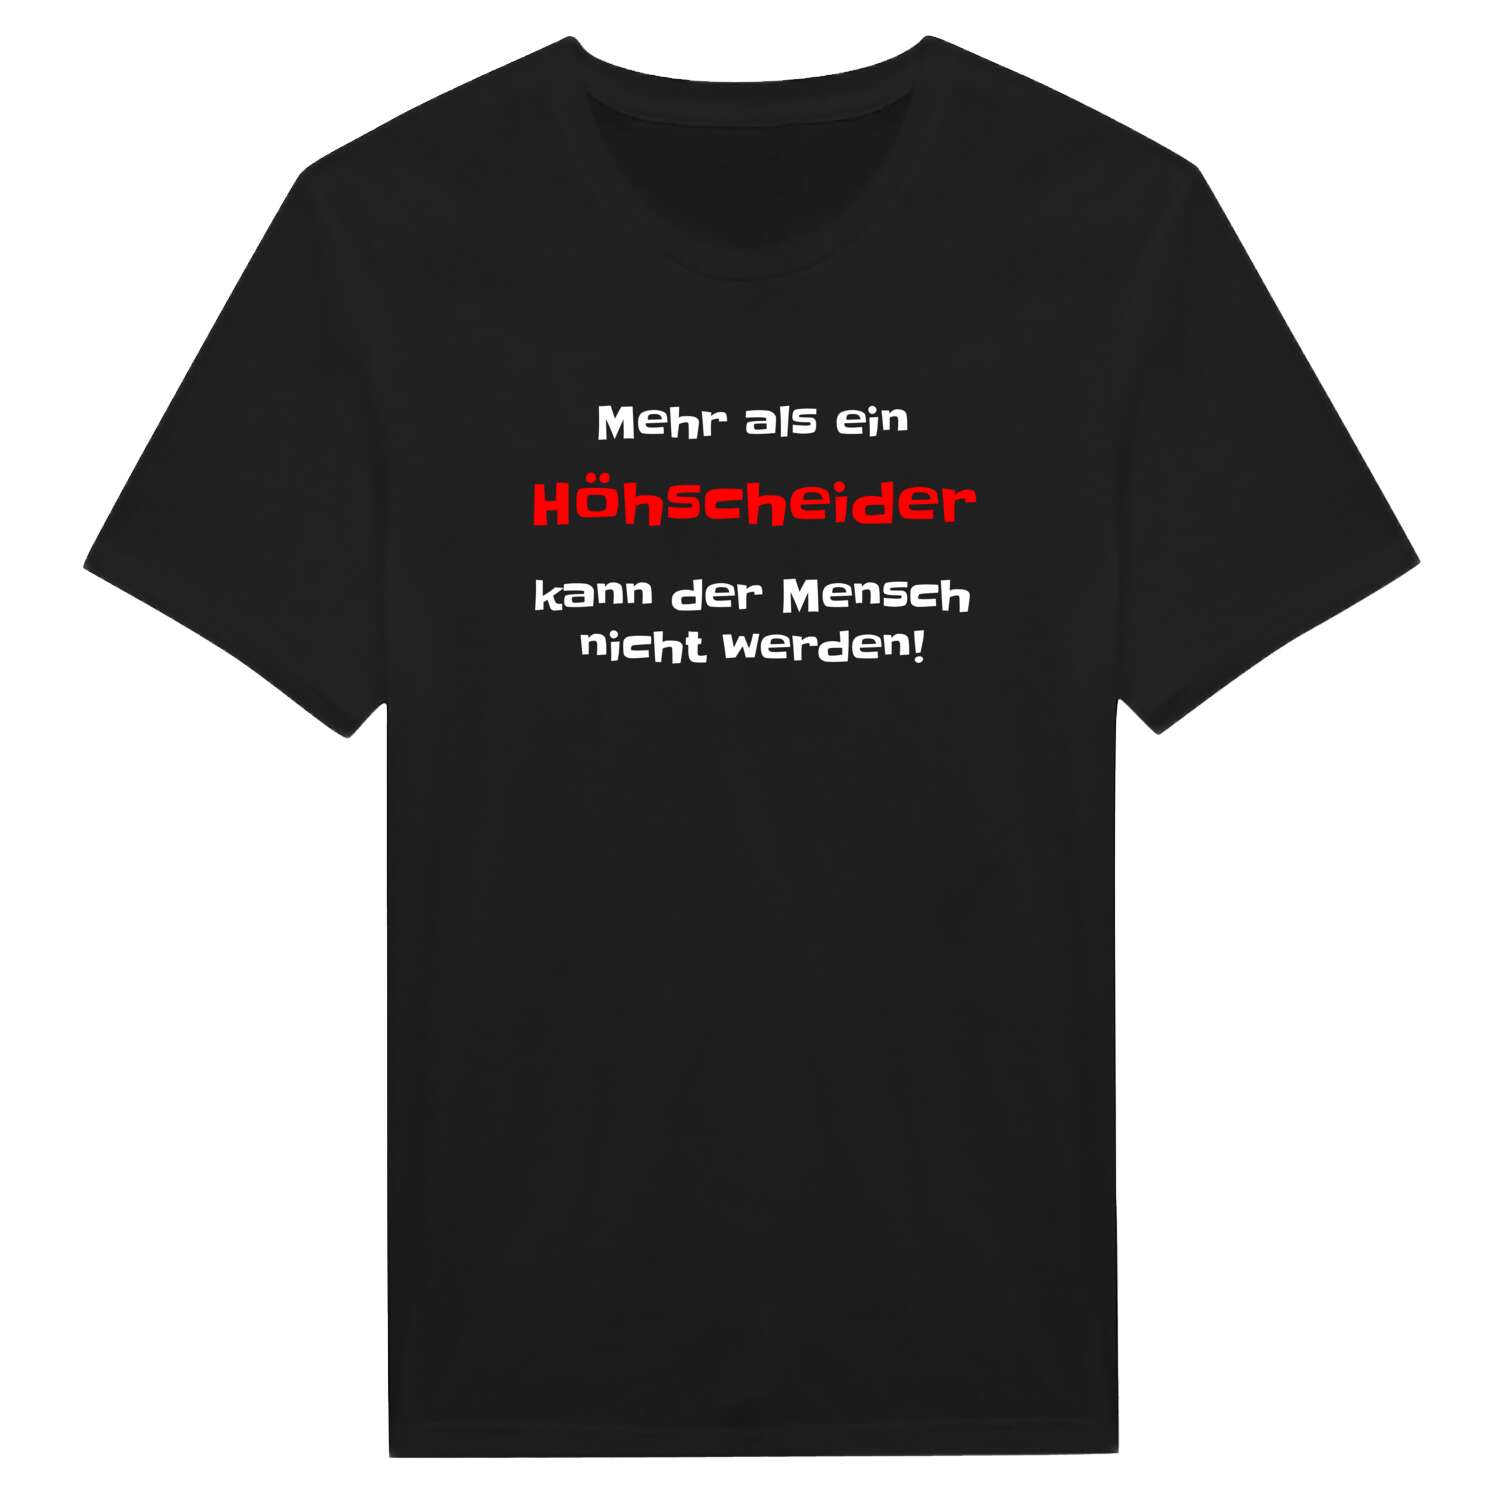 Höhscheid T-Shirt »Mehr als ein«